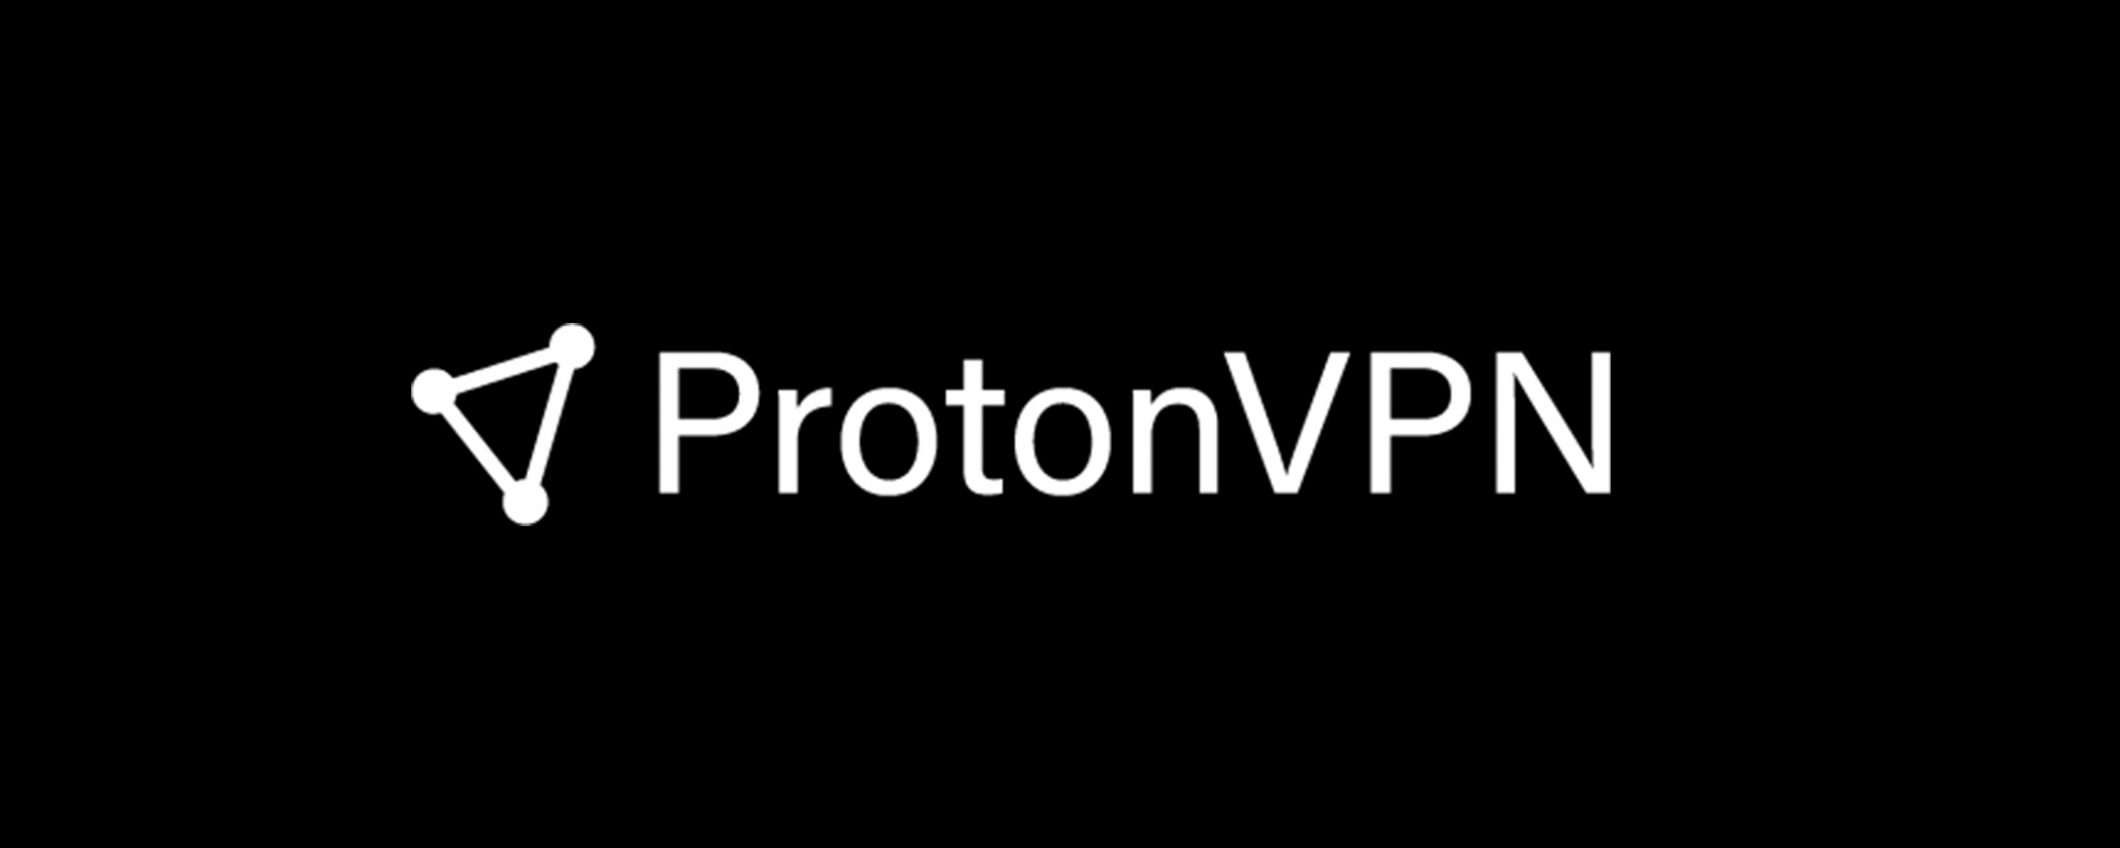 ProtonVPN: protocollo WireGuard e sconto fino al 33%